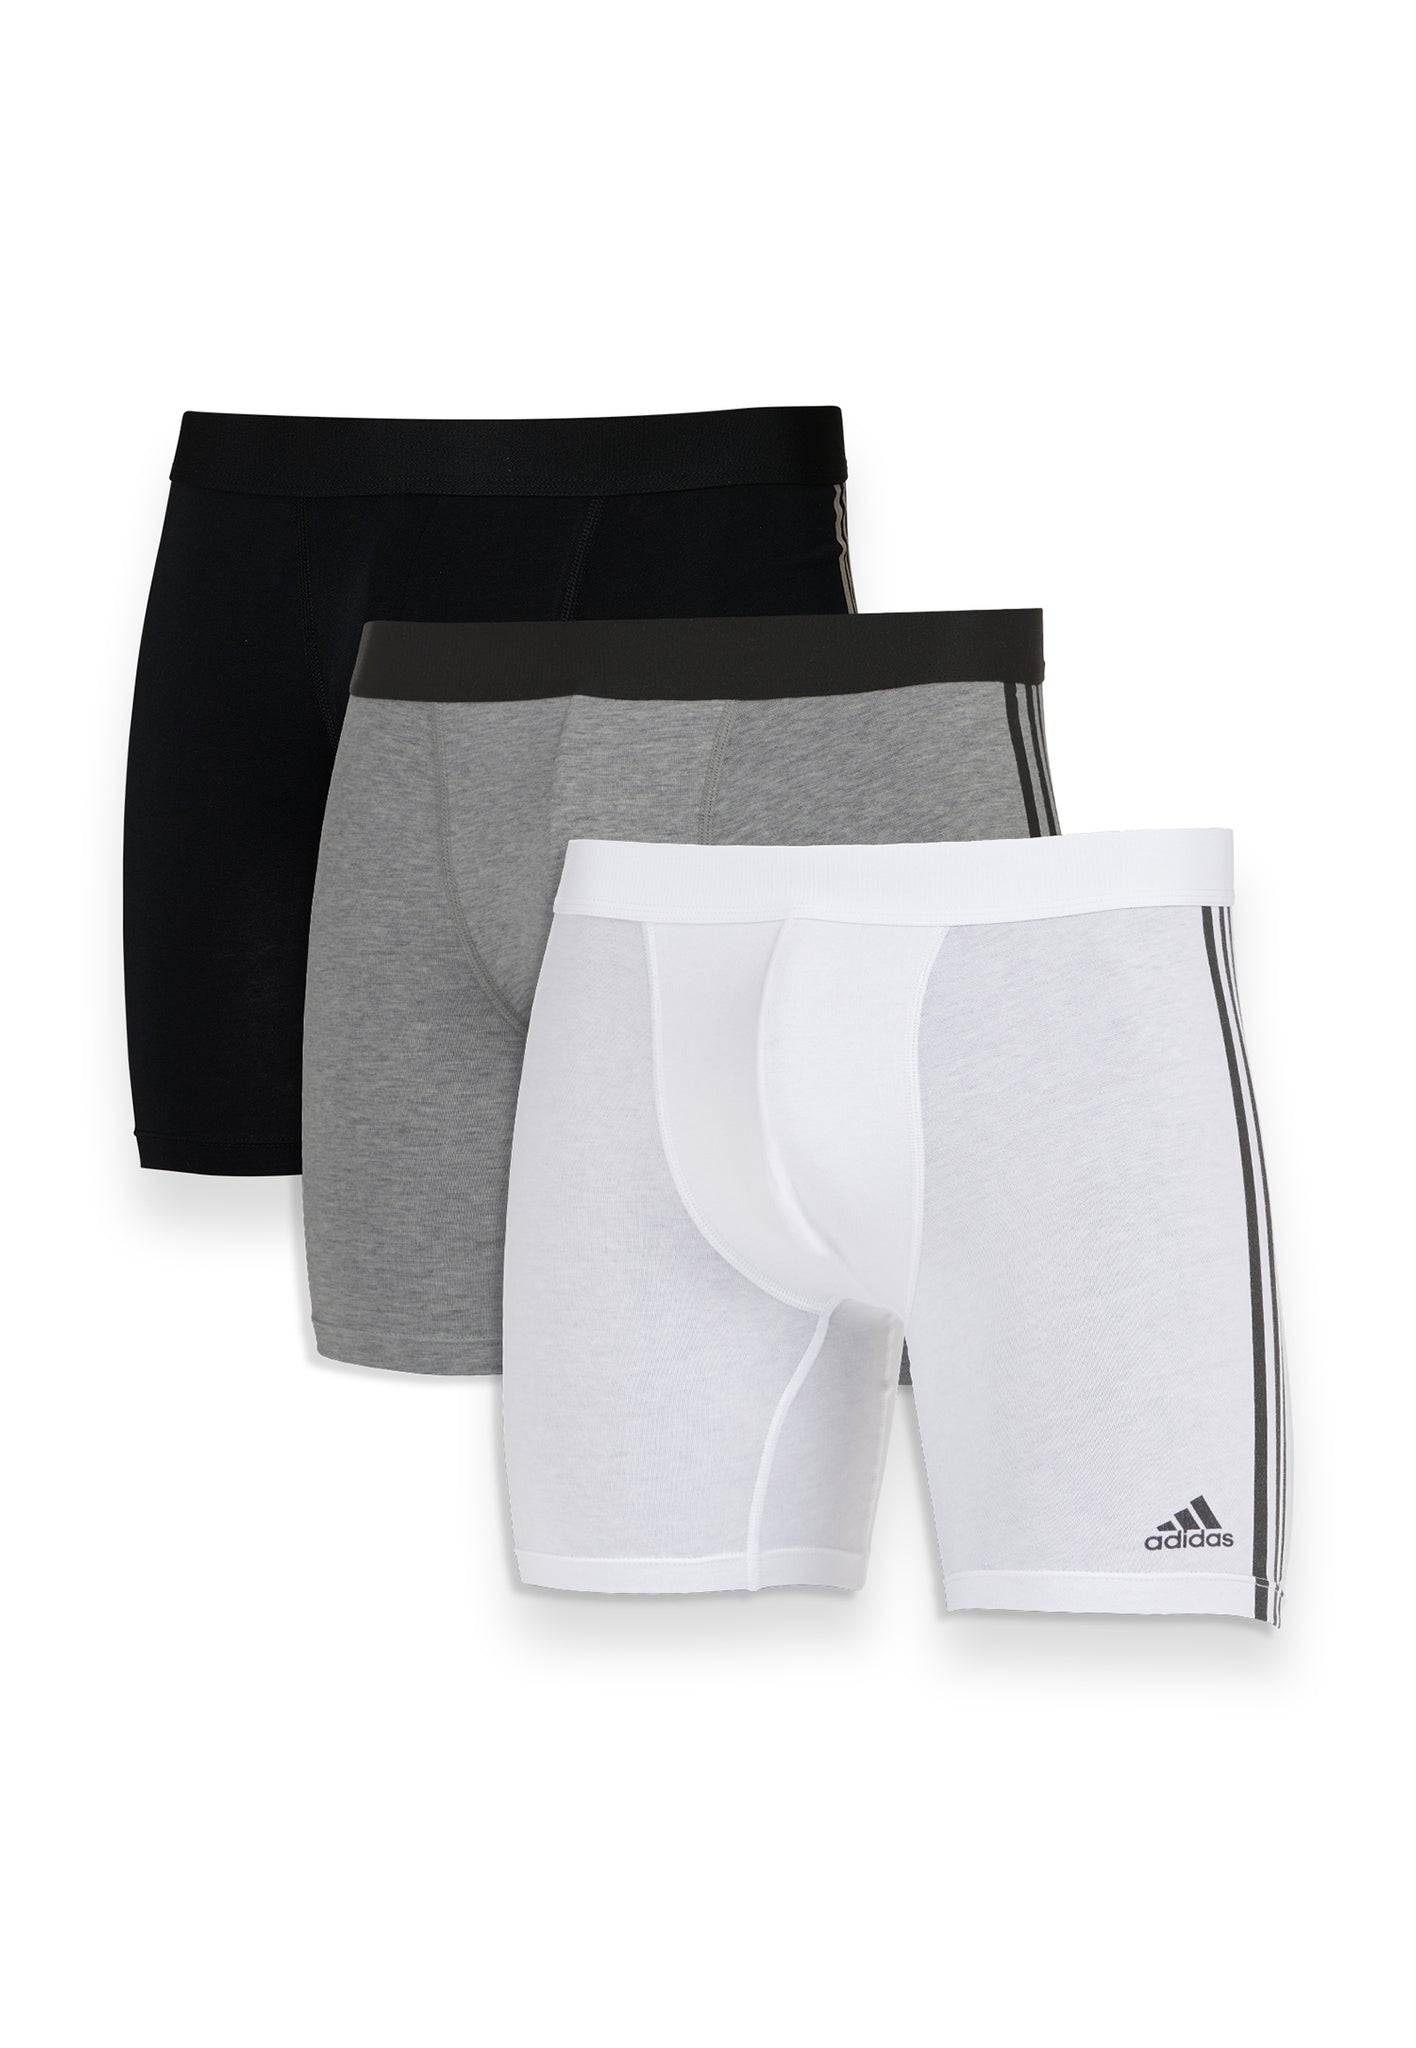 adidas Mens Stretch Cotton Boxer Brief Underwear (3-Pack) 